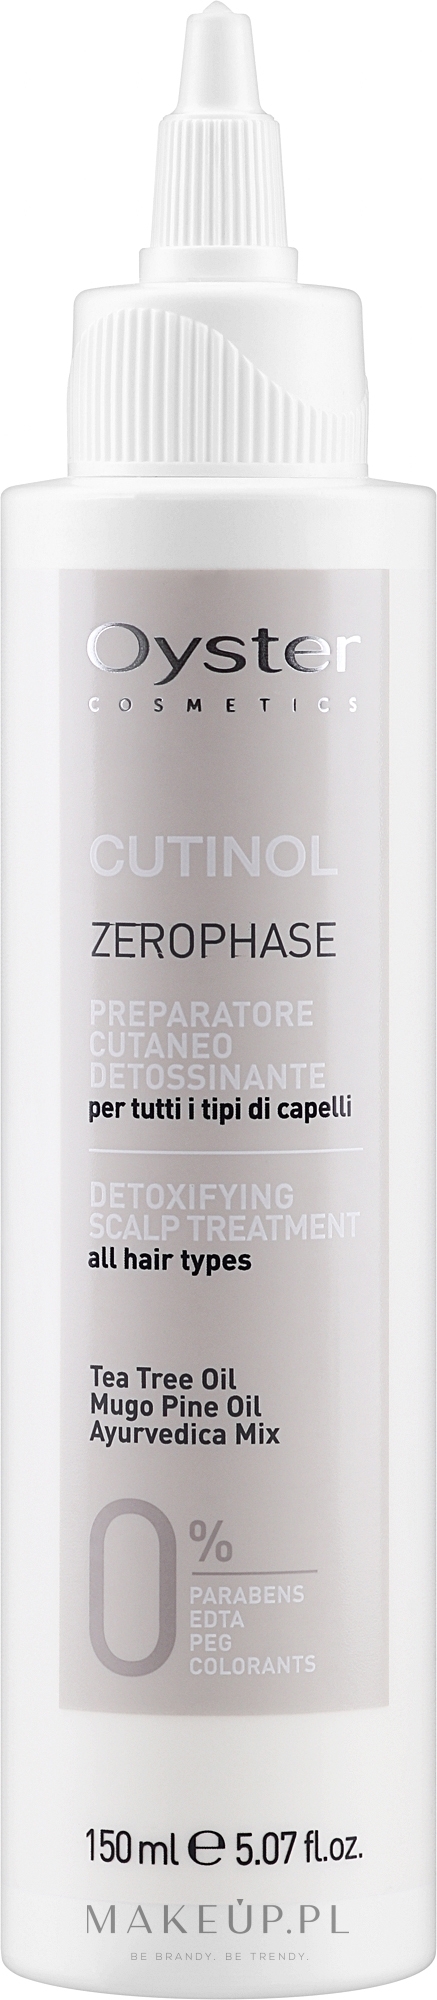 Detoksykujący szampon do skóry głowy - Oyster Cosmetics Cutinol Zerophase Pre-Cleansing Shampoo — Zdjęcie 150 ml